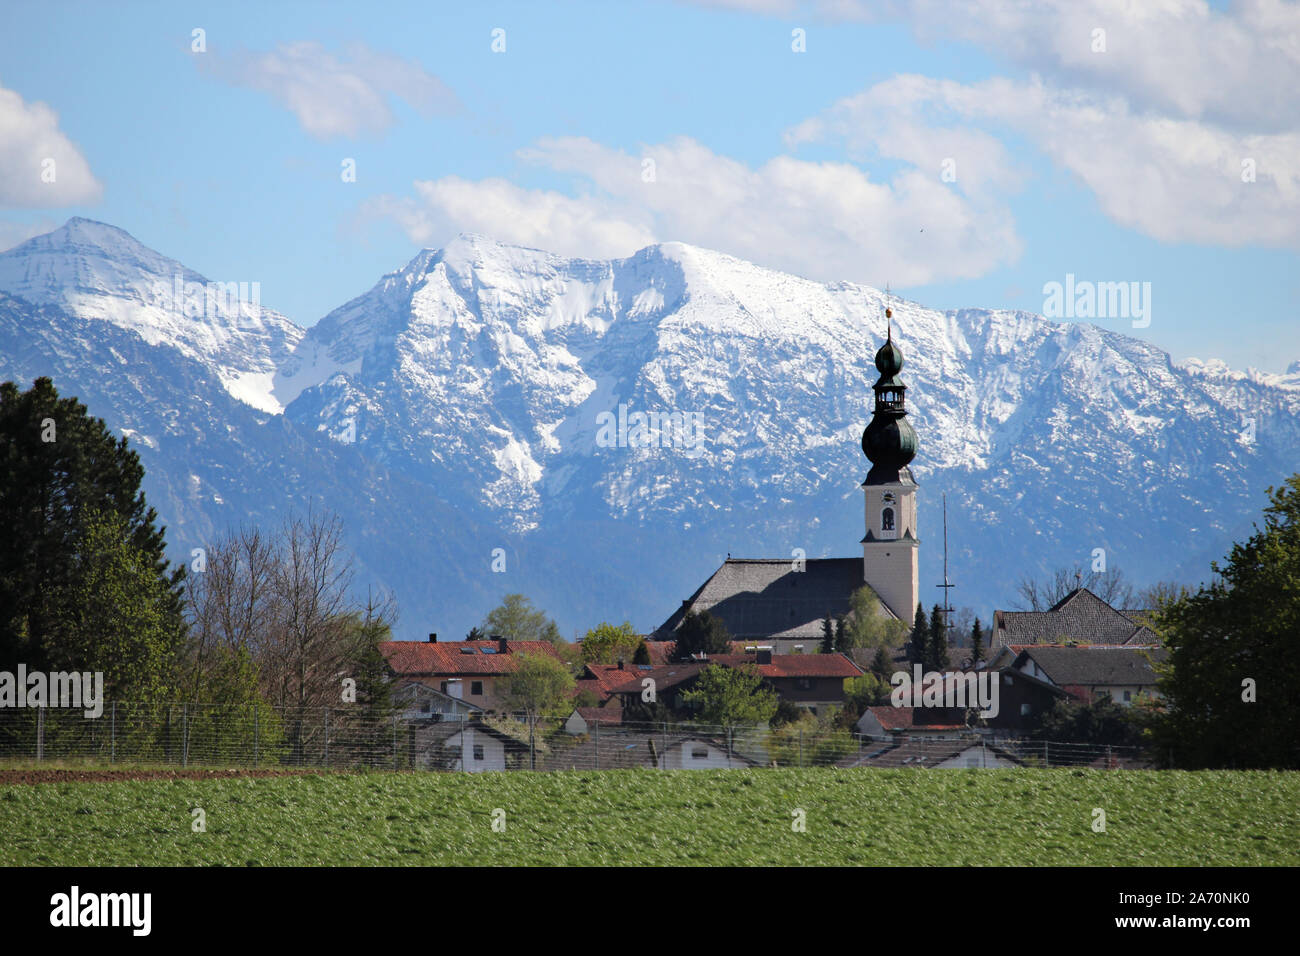 die Pfarrkirche von Traunwalchen scheint in diesem Telefoto ganz nah vor den Schneewänden der Chiemgauer Berge * Traunwalchen in front of the Alps Stock Photo